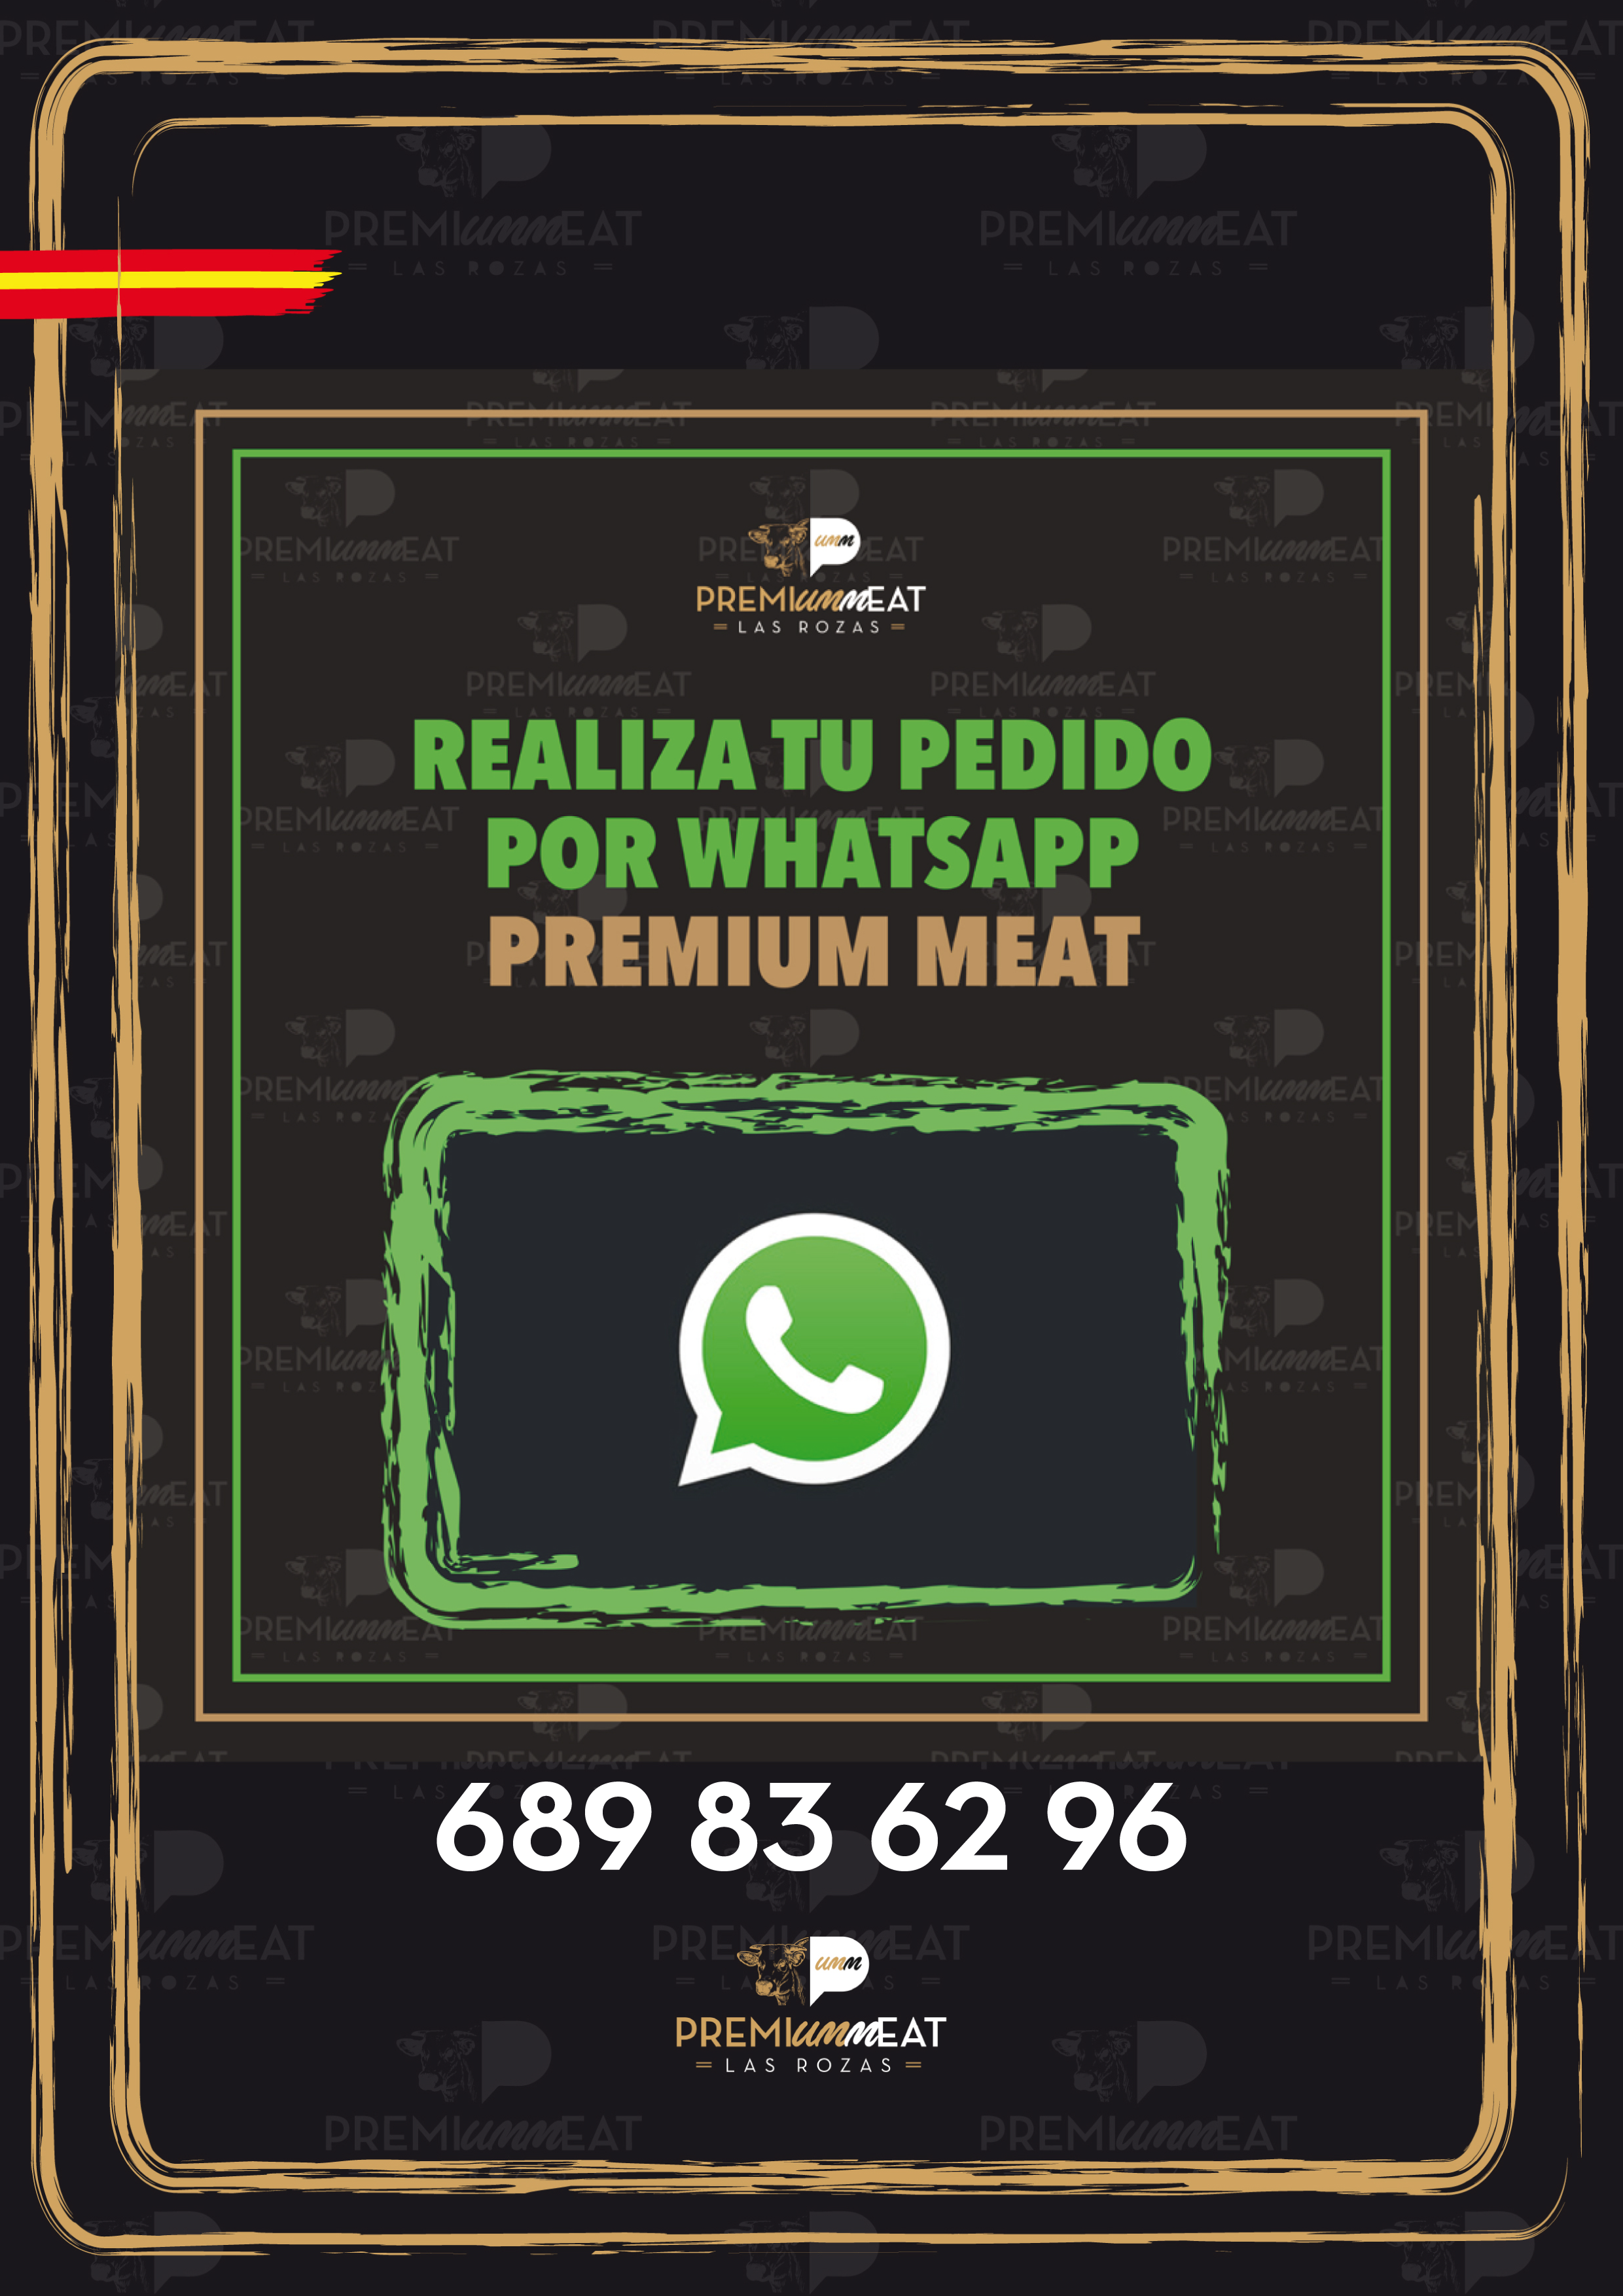 haz tus pedidos por whatsapp v www.premiumm.es premiummeat
premiummeat premiumm meat
premiumm.es
premium meat las rozas